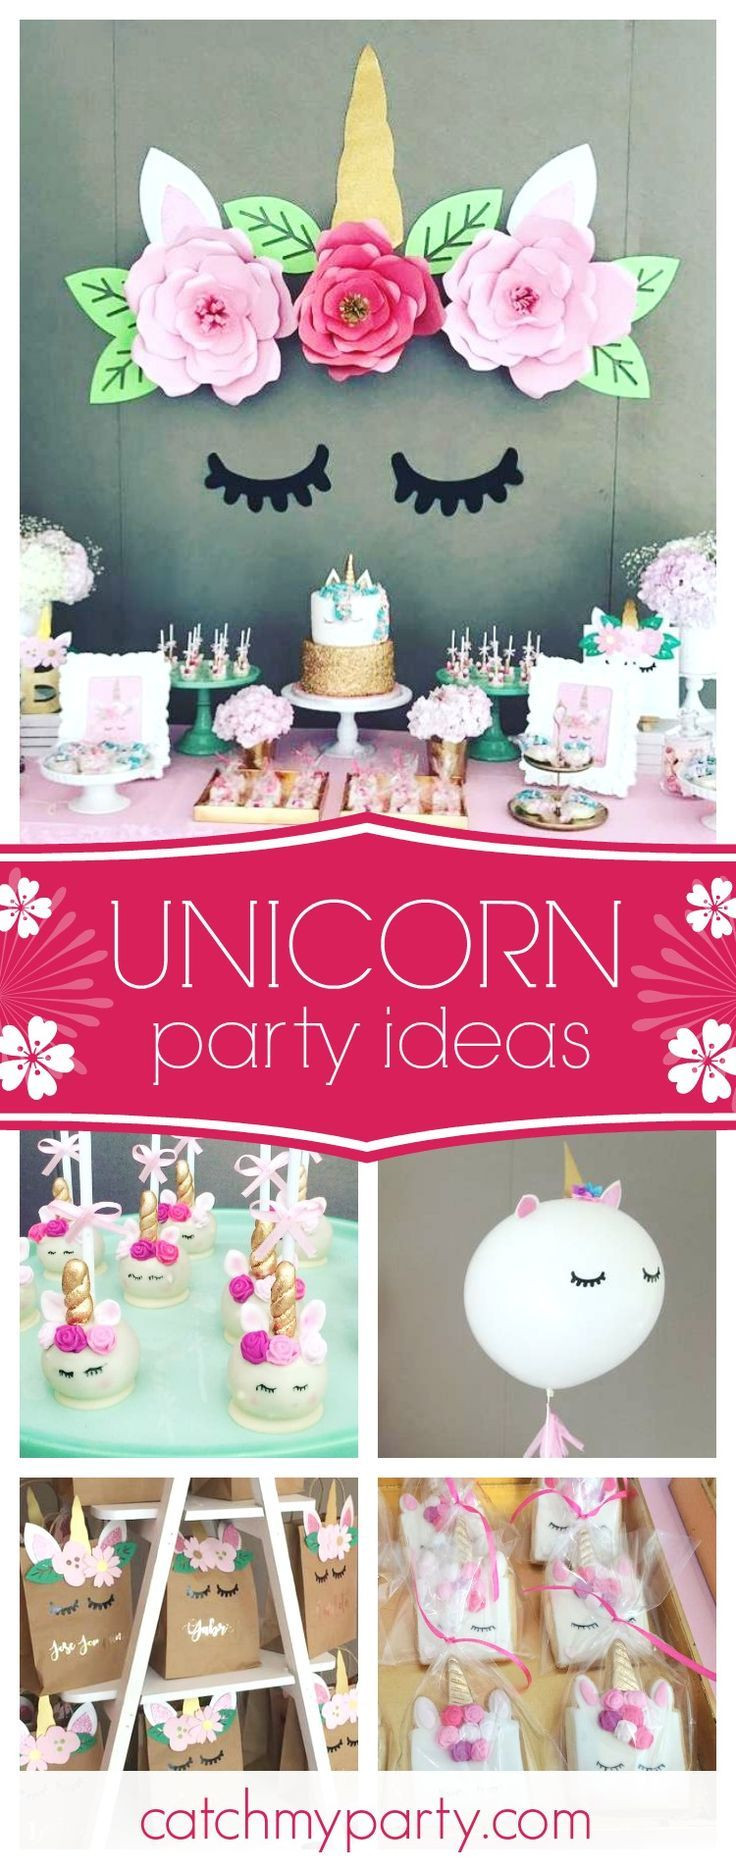 Unicorn Party Decoration Ideas
 Best 25 Unicorn birthday parties ideas on Pinterest